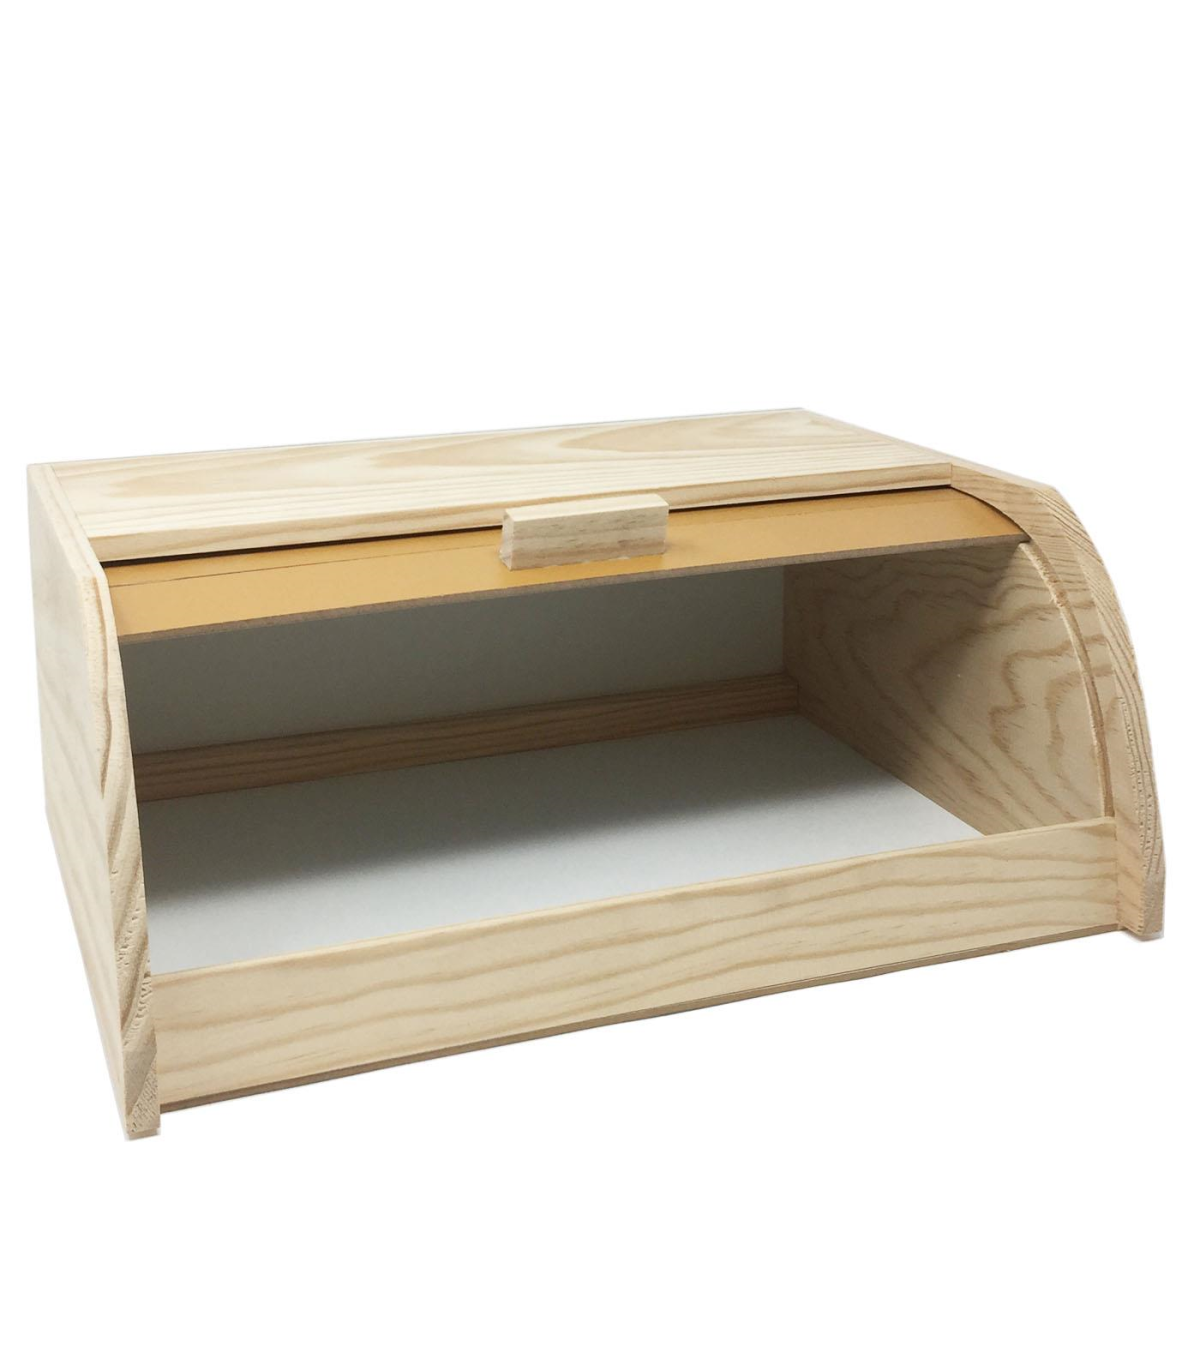 Panera de madera con tapa persiana 15 x 34.7 x 25.3 cm. Contenedor para pan  de madera natural, recipiente con tapa deslizante pa